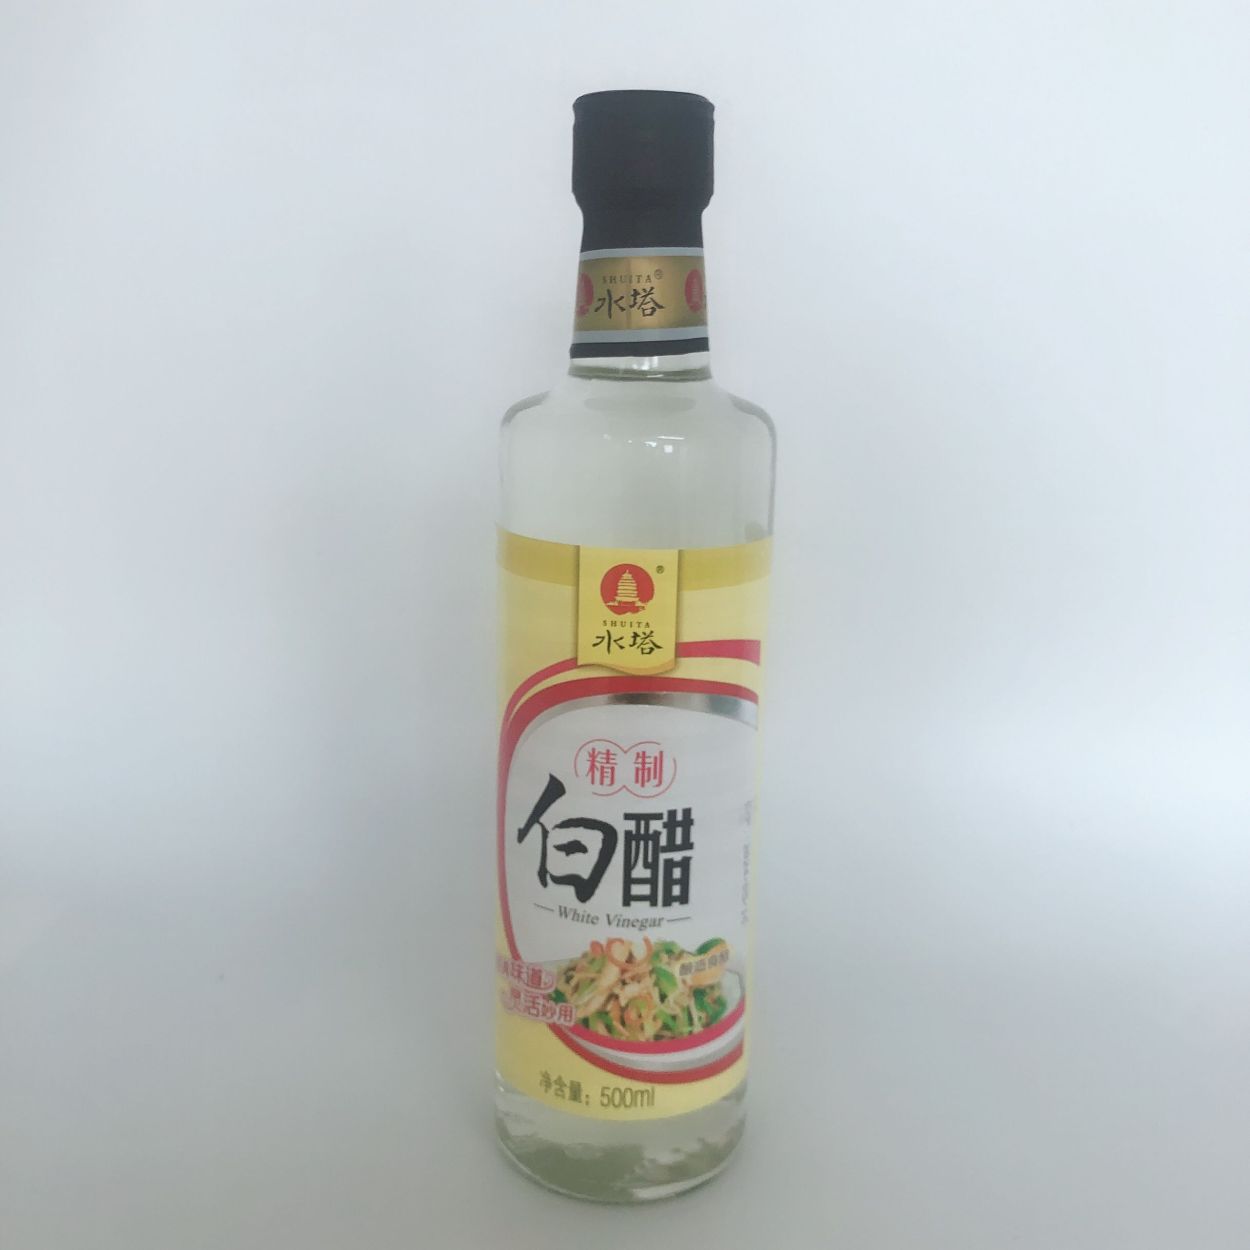 海天 海鮮醤油 500ｍl 中国醤油 中華食材 冷凍商品と同梱不可 :x10911:ハッピーライフ - 通販 - Yahoo!ショッピング